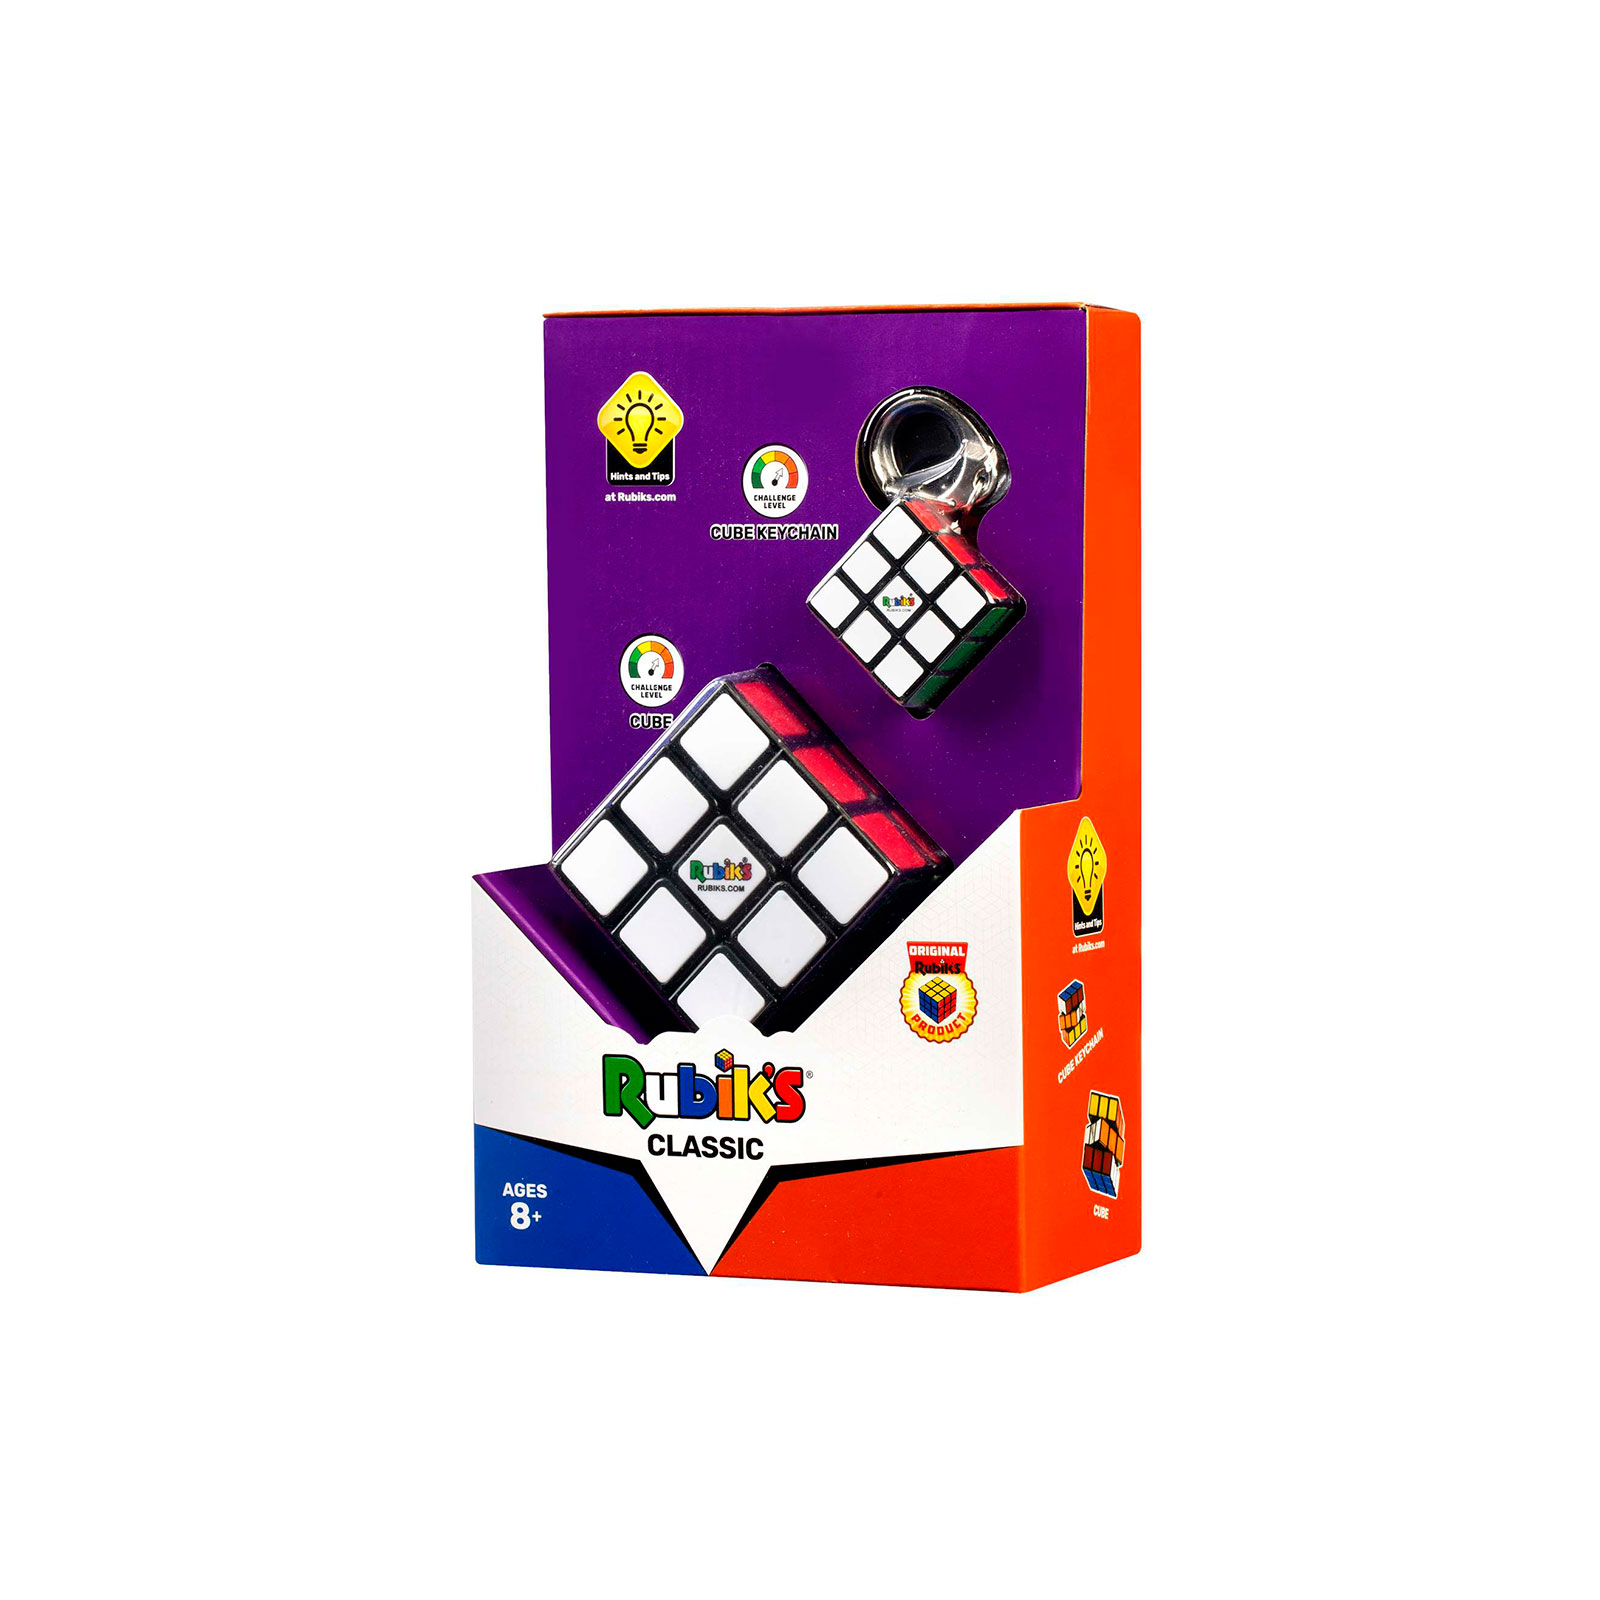 Головоломка Rubik's Кубик и мини кубик 3х3 и кольцом (6062800) изображение 4